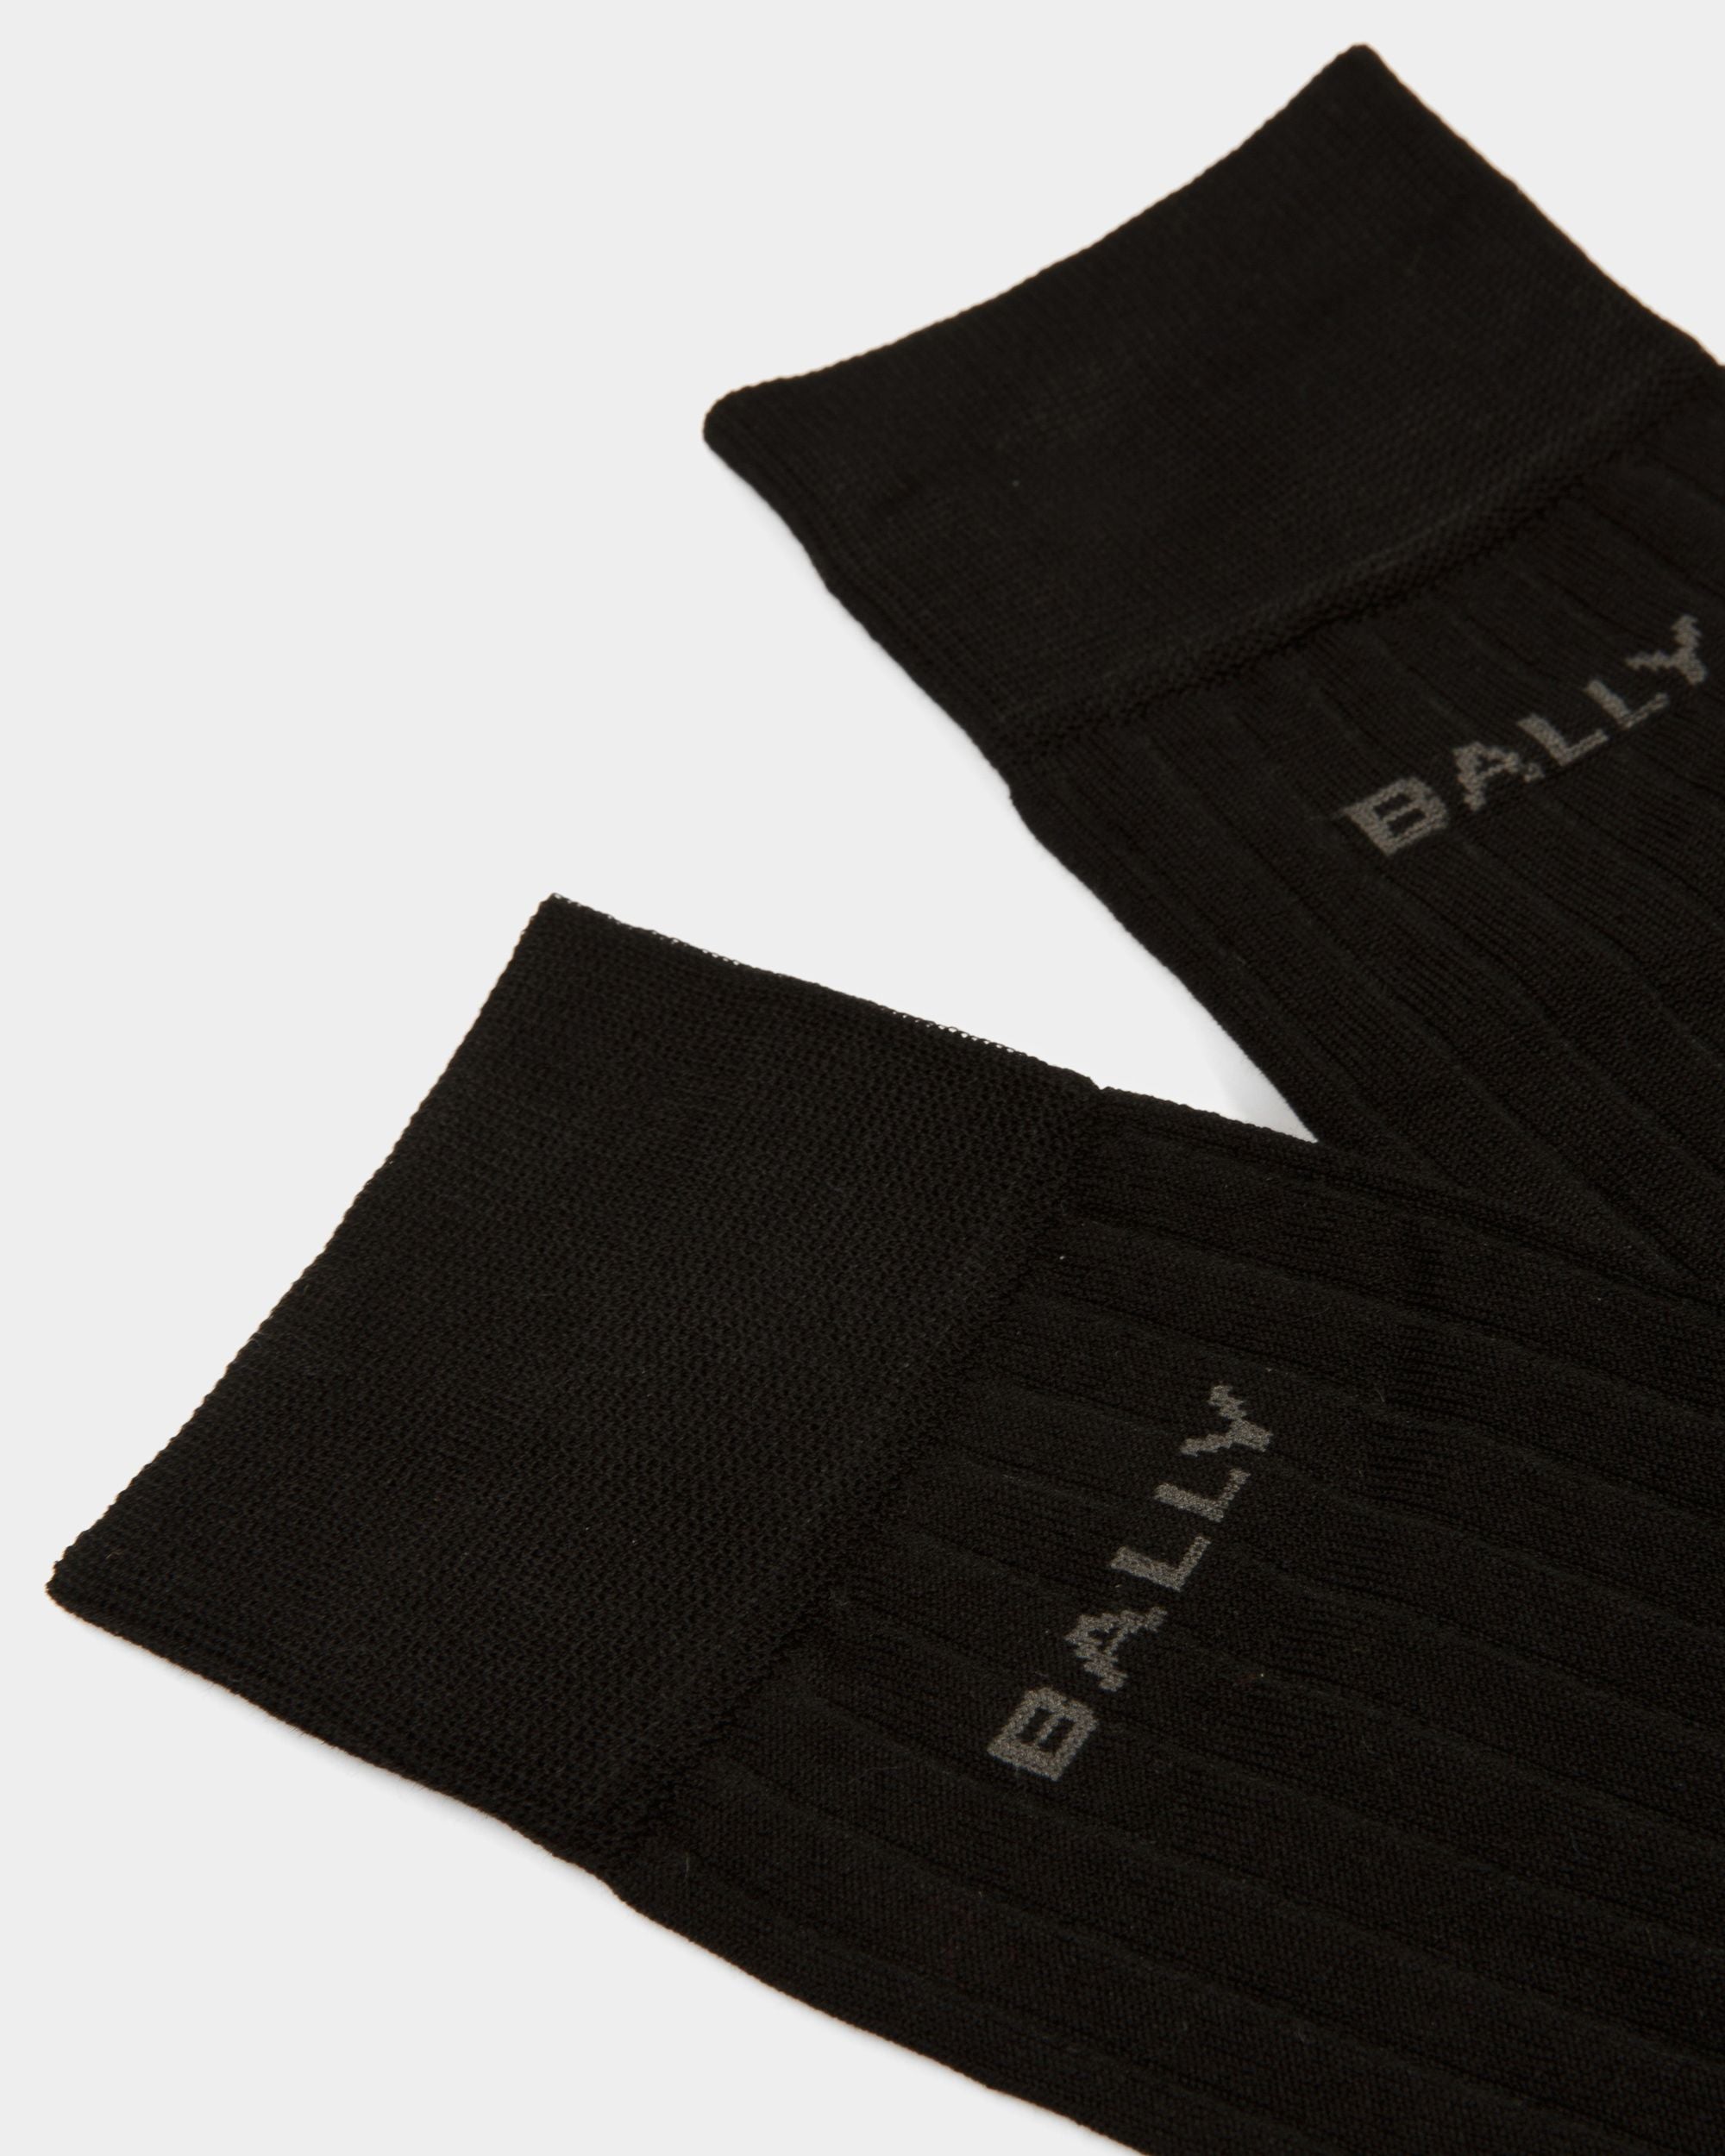 Ribbed Logo Socks | Men's Socks | Black Cotton Blend | Bally | Still Life Detail